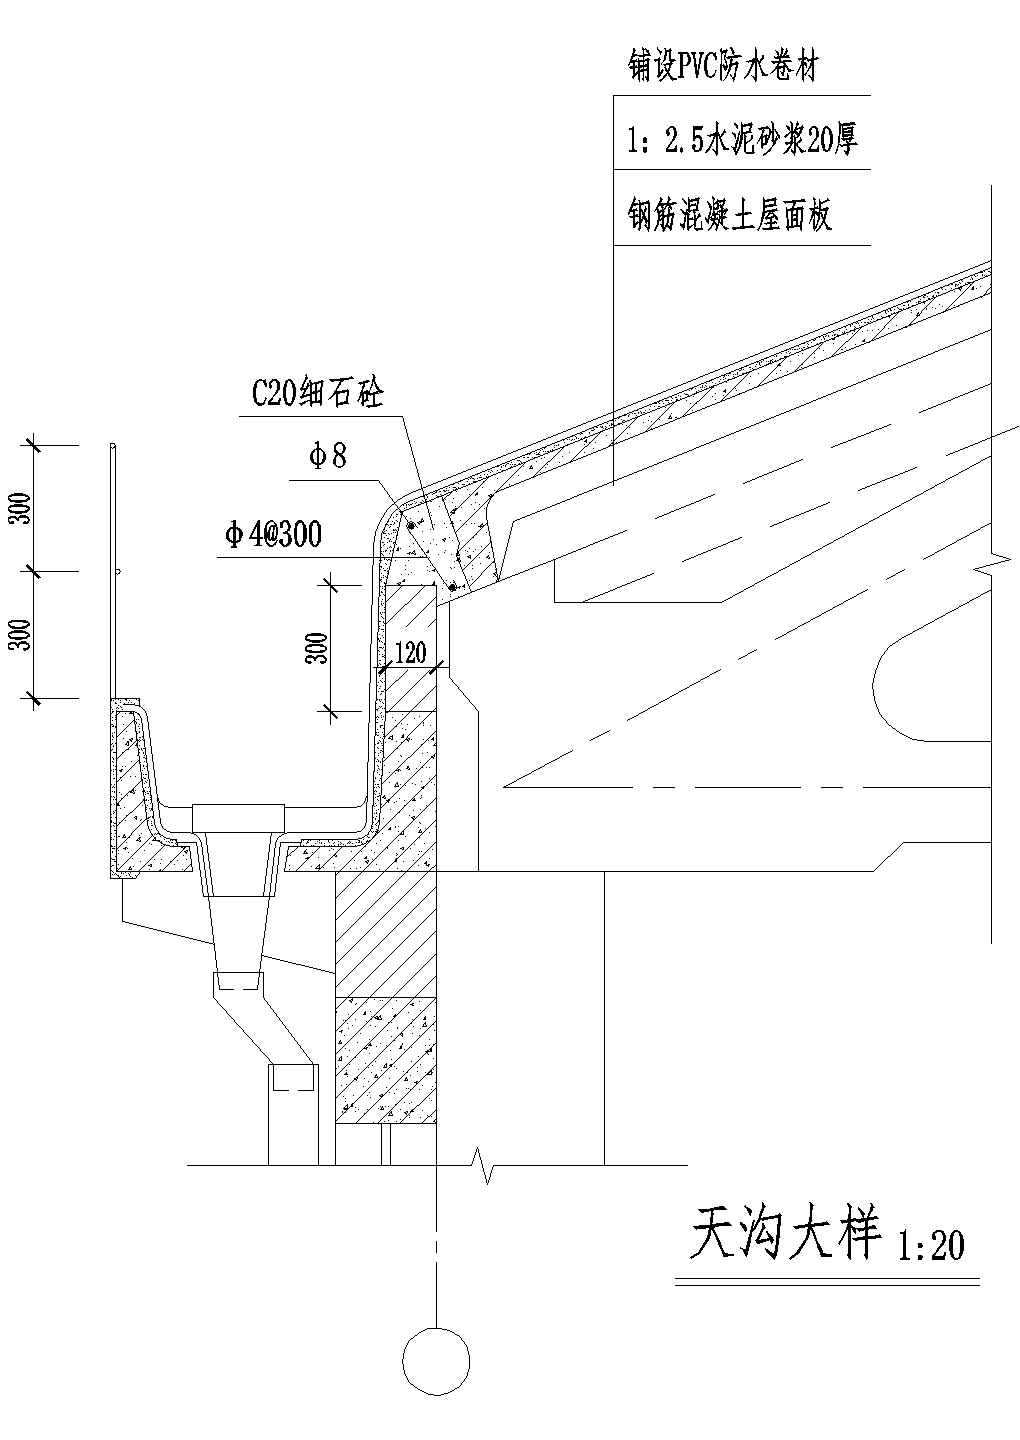 国际贸易中心钢结构天沟施工全套非常实用设计cad图纸